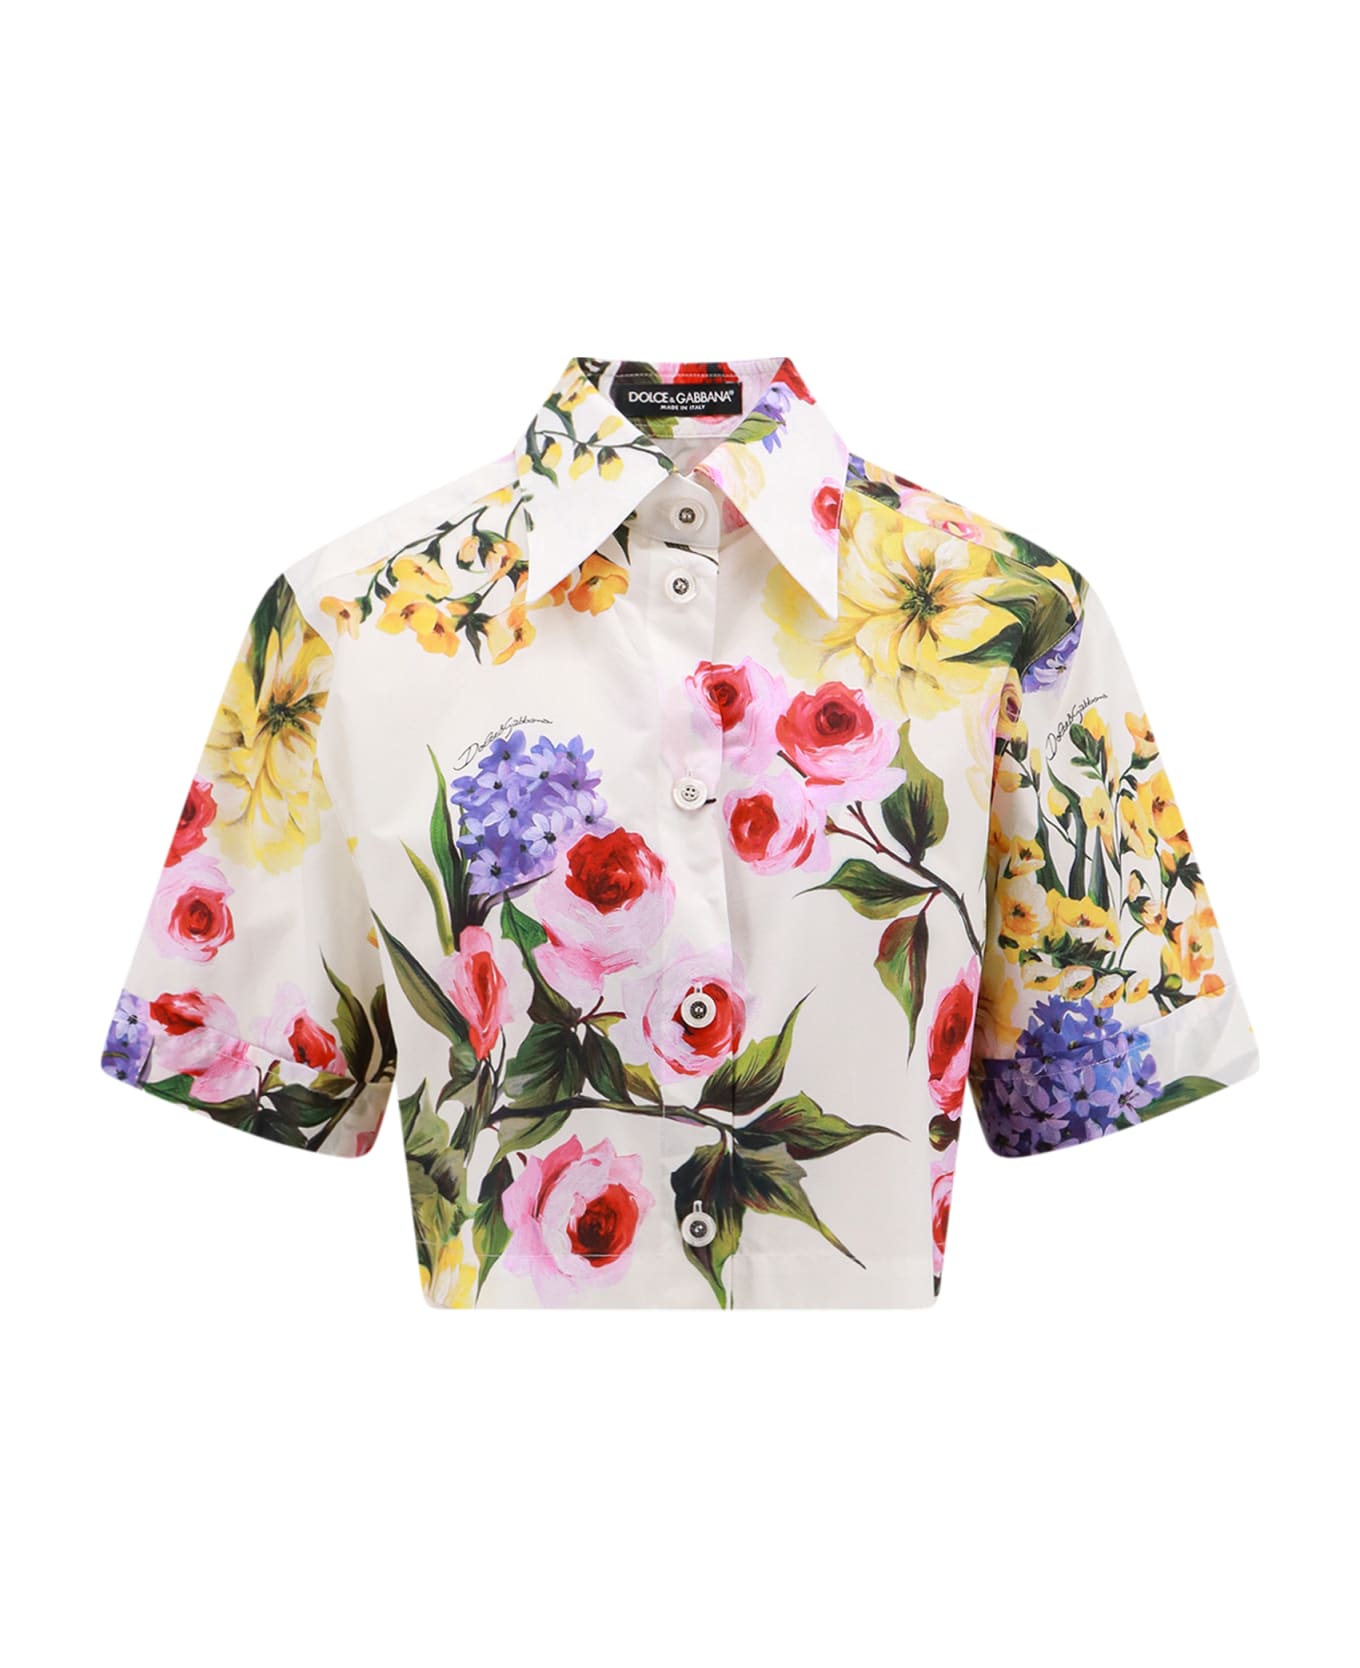 Dolce & Gabbana Cotton Poplin Shirt - Multicolor